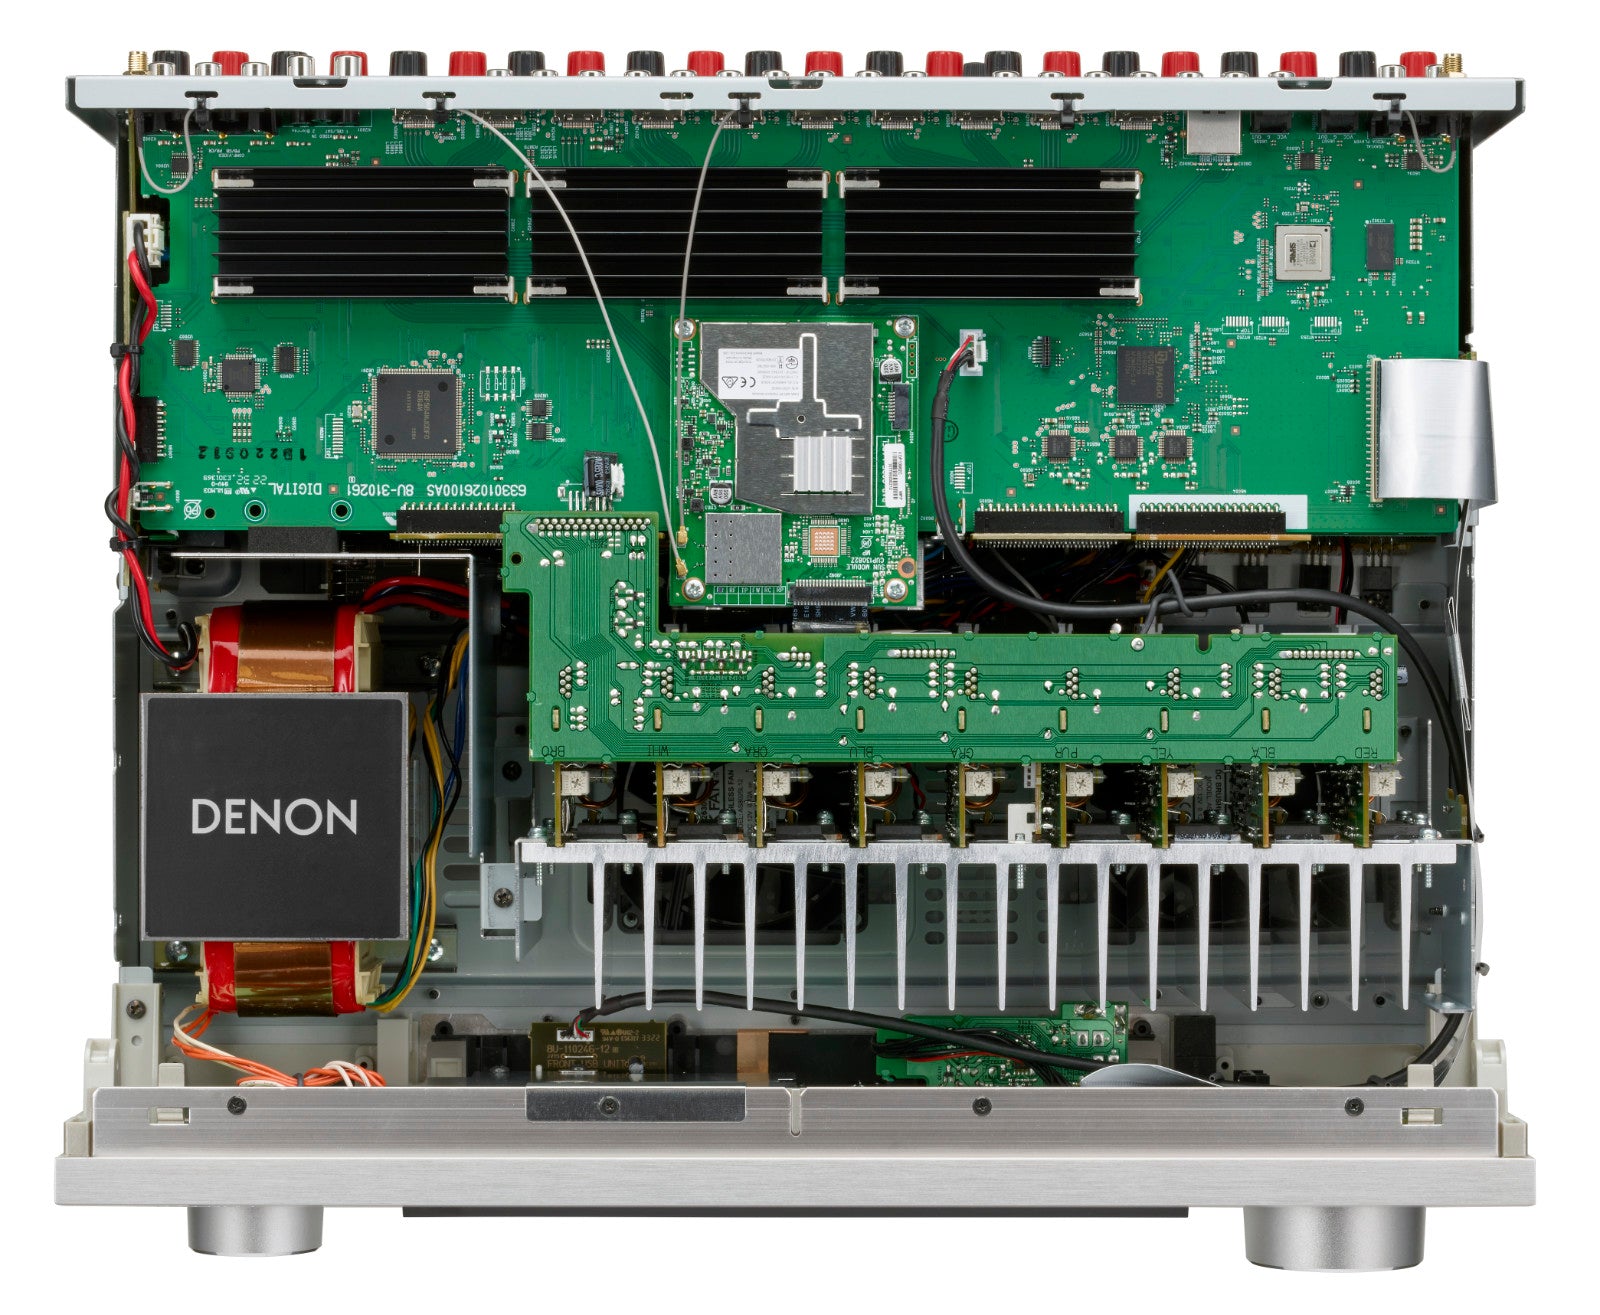 Denon AVC-X4800H 9.4-channel AV amplifier